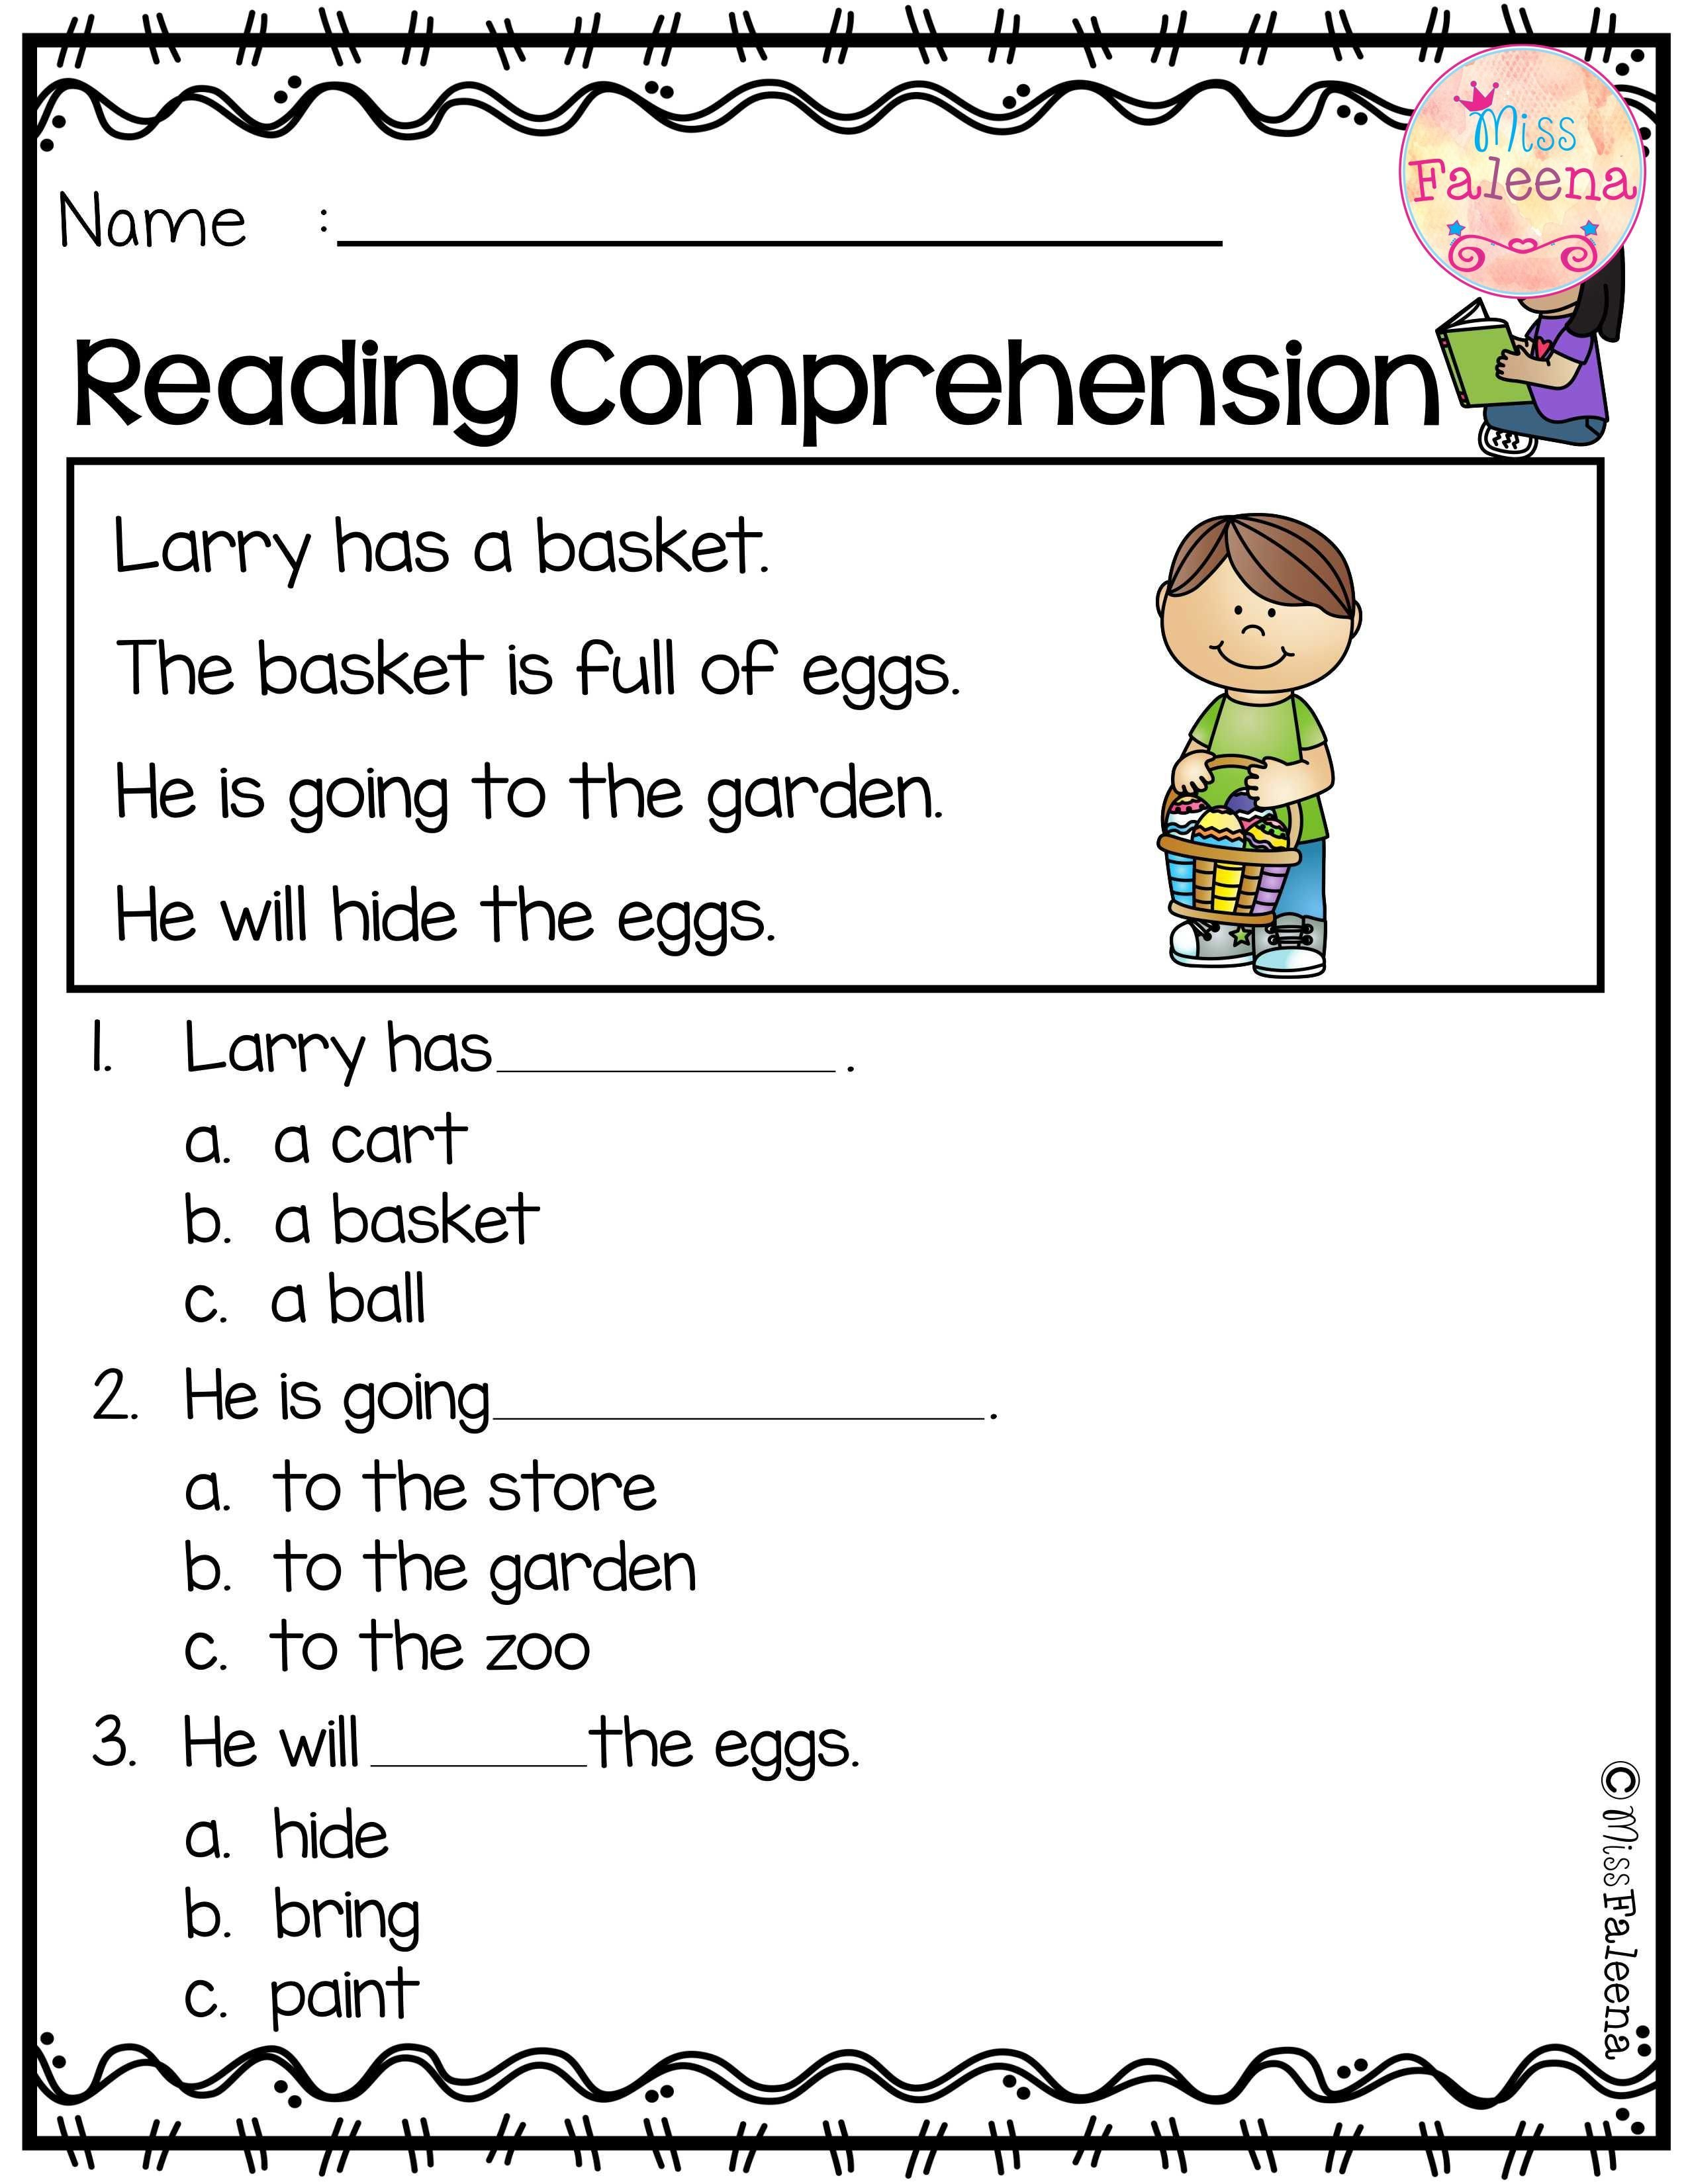 Worksheet English Subject Grade Worksheets Easter Activity Sheets For Kindergarten Reading Comprehension Worksheets